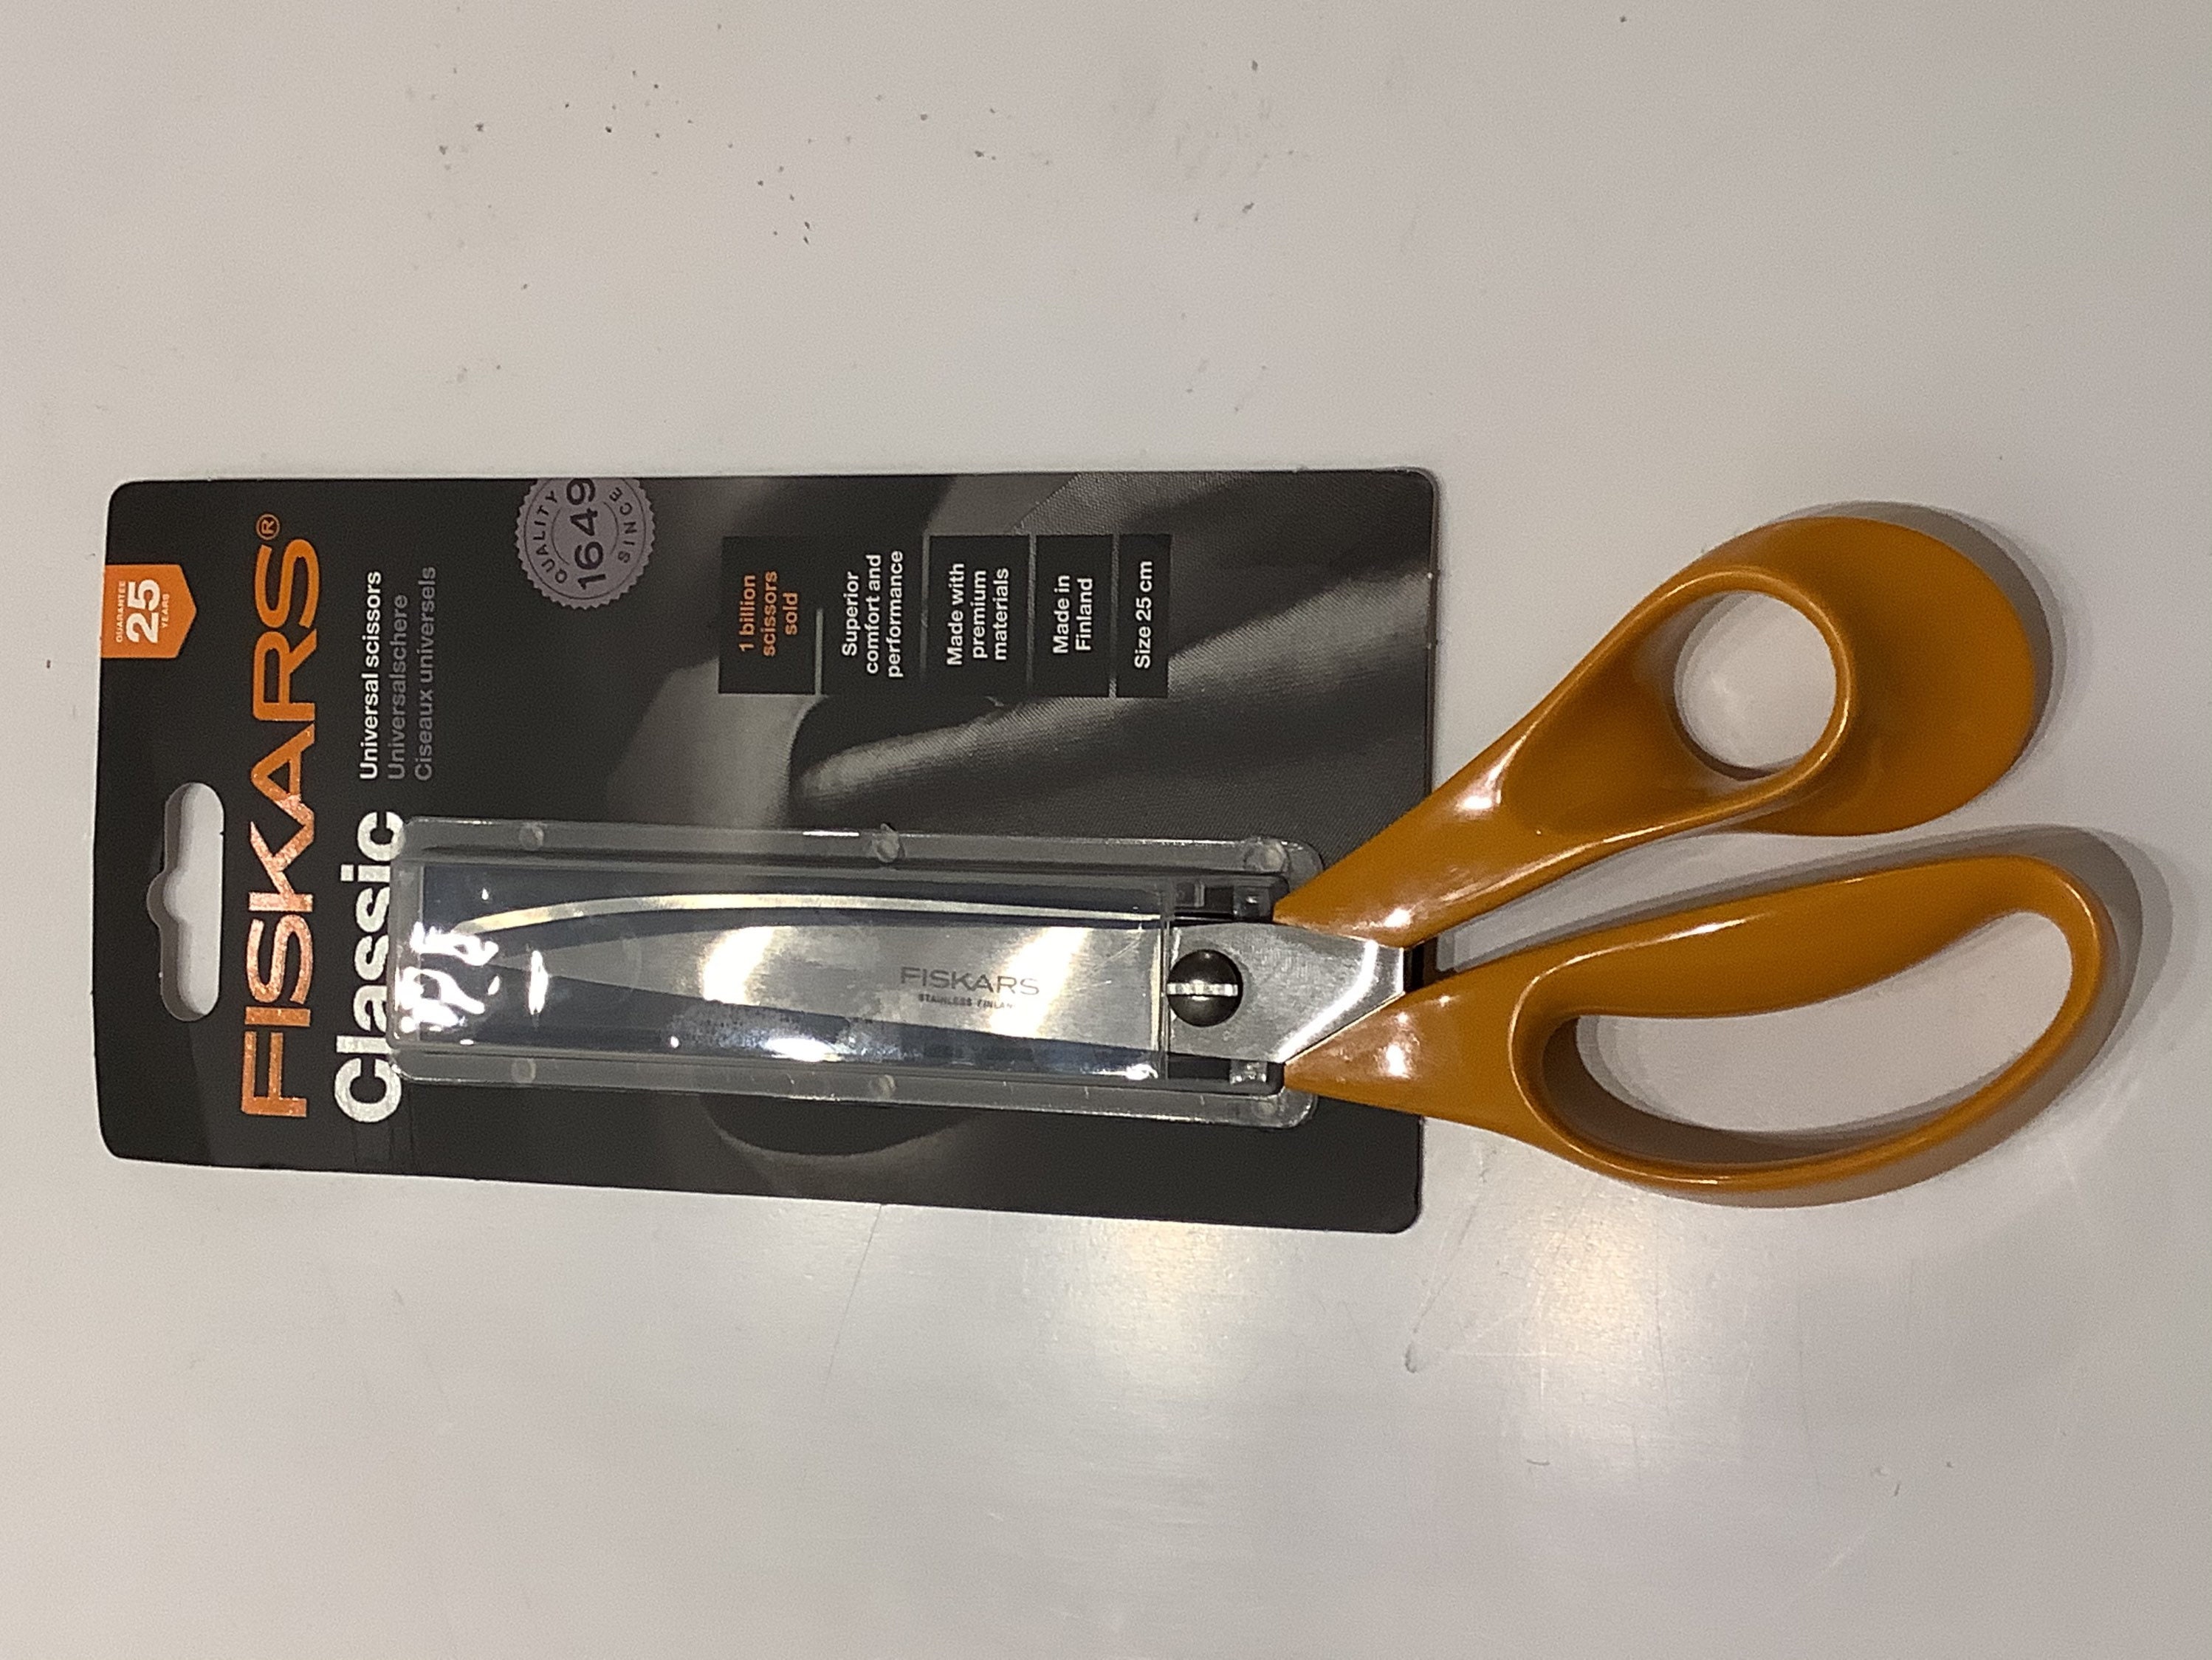 Fiskars All Purpose Ergo Plus 8 Inch Scissors 